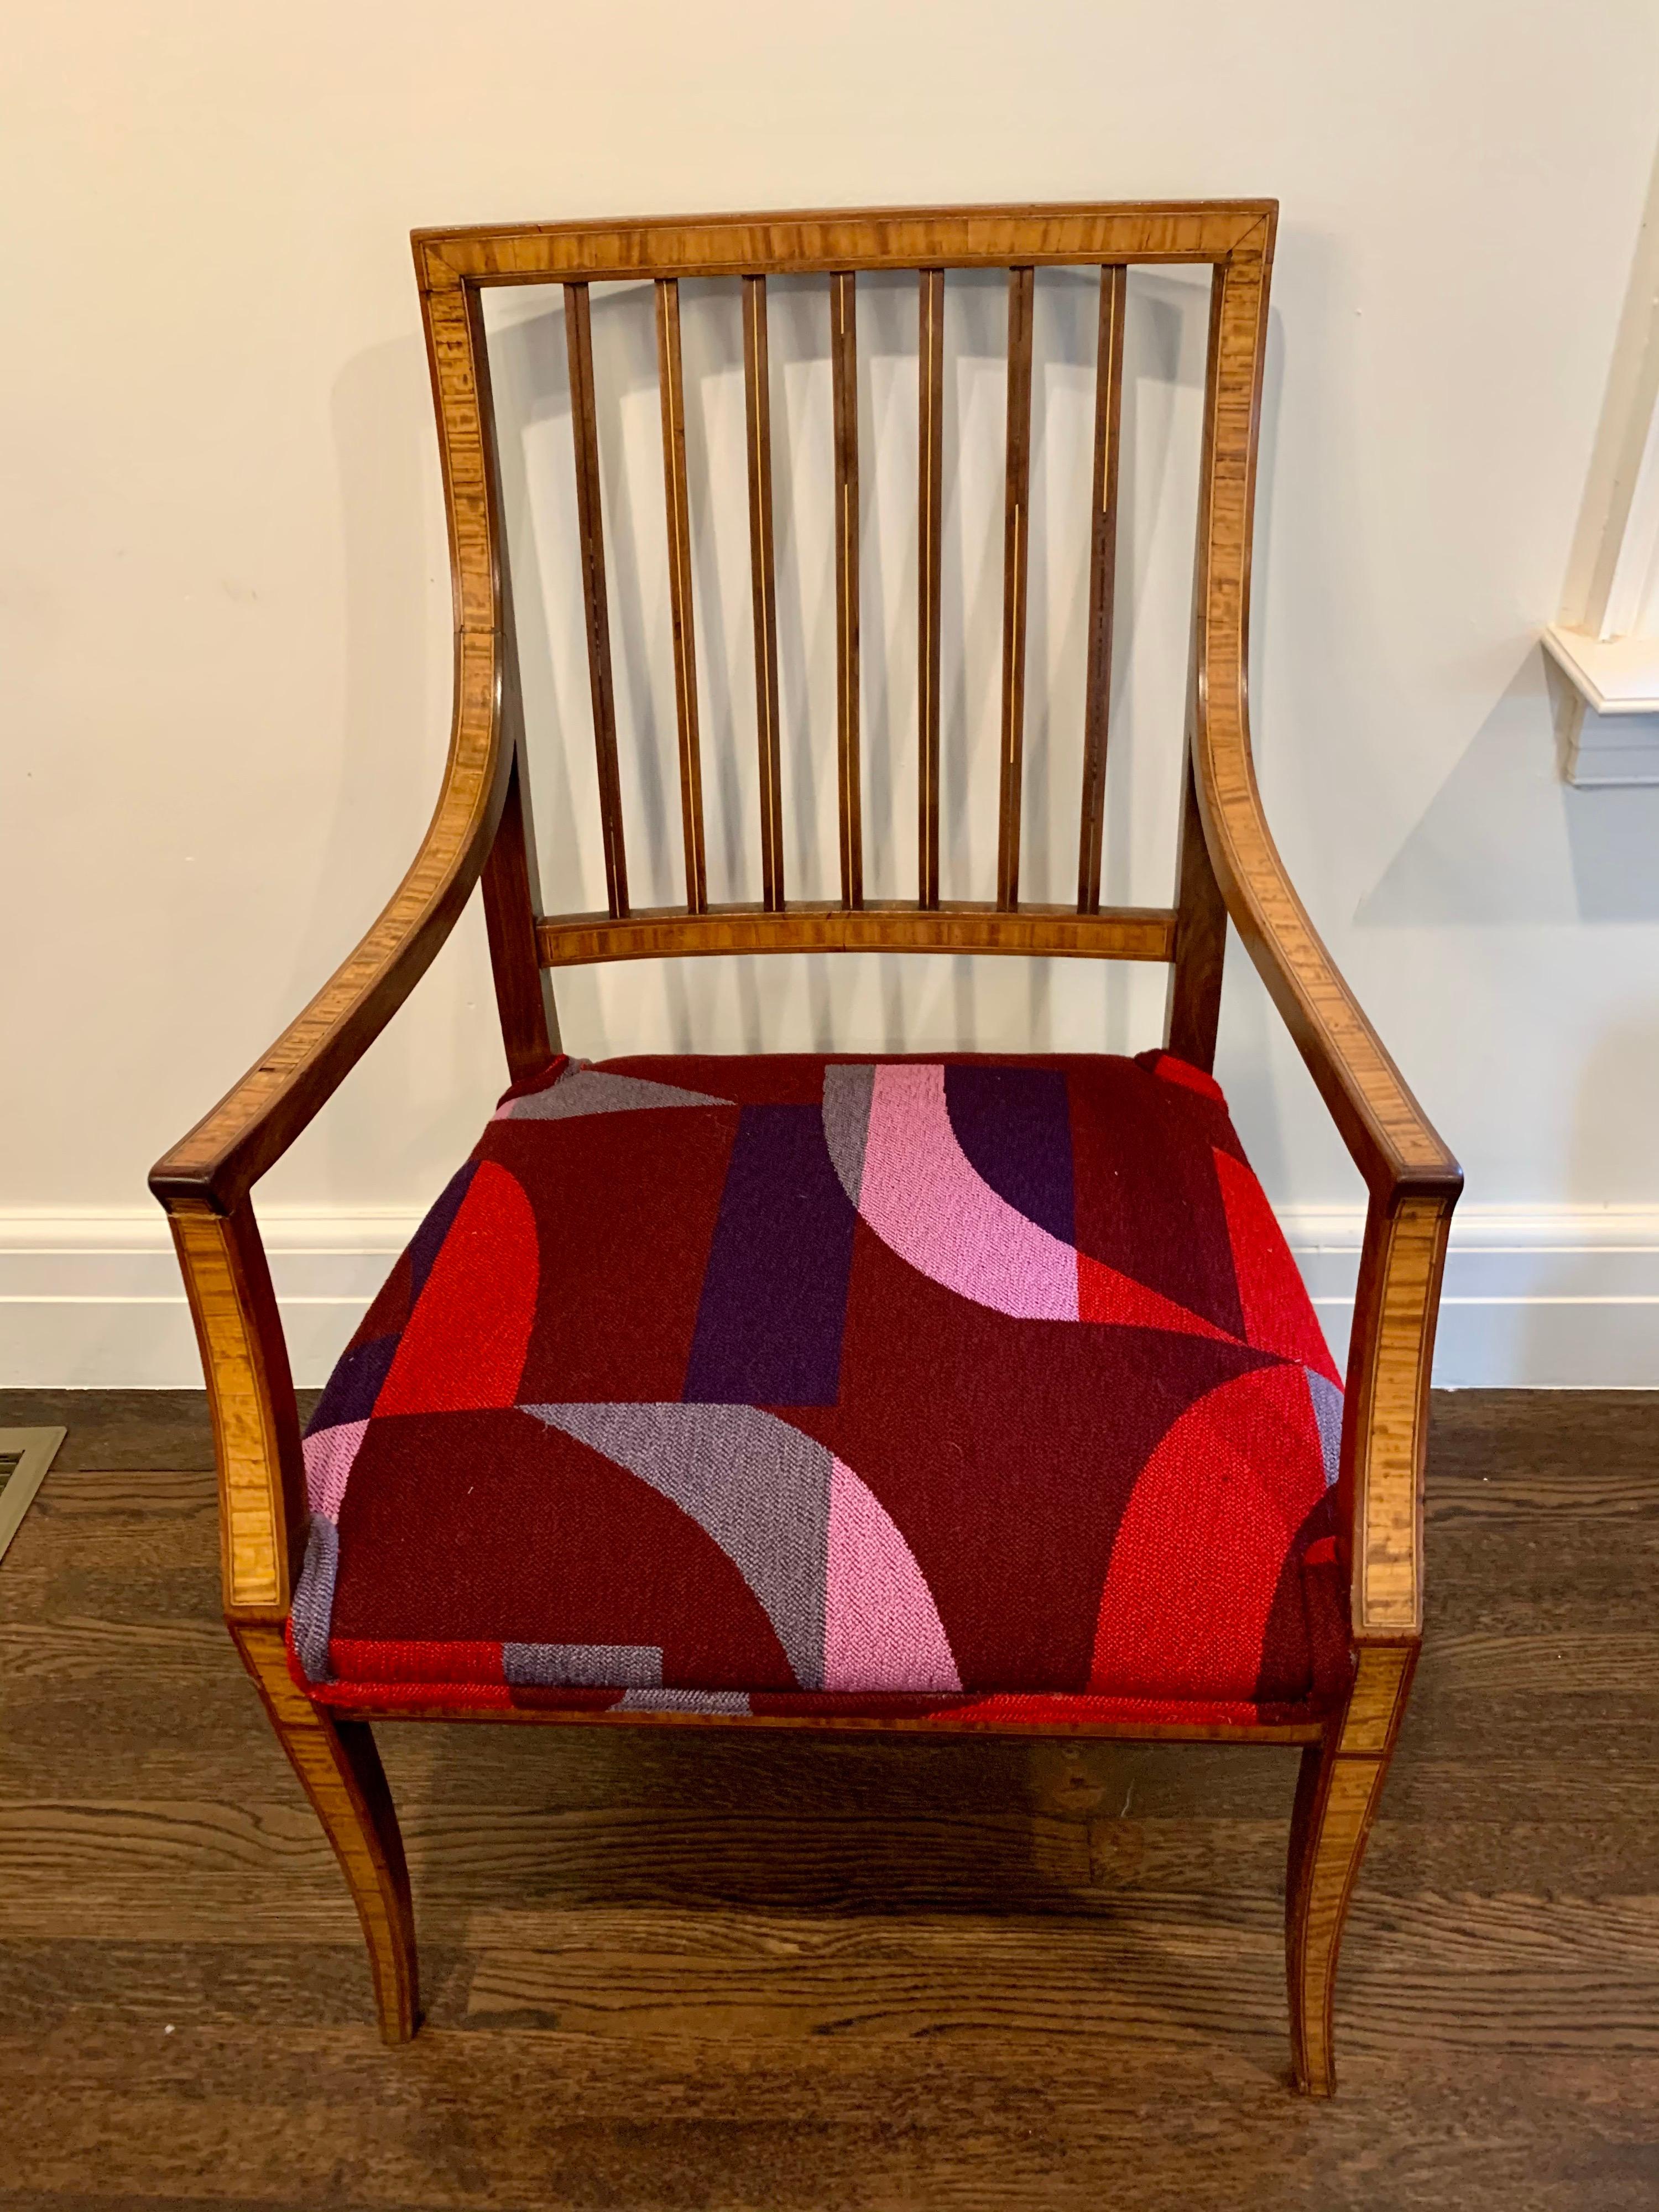 Der ikonische, selten vergriffene Vintage-Stoff von Herman Miller ziert diesen herrlichen französischen Louis-XVI-Sessel aus Obstholz. Die Gegenüberstellung ist einfach fesselnd, und dieser Stuhl wird sofort zum Mittelpunkt eines jeden Raumes, in